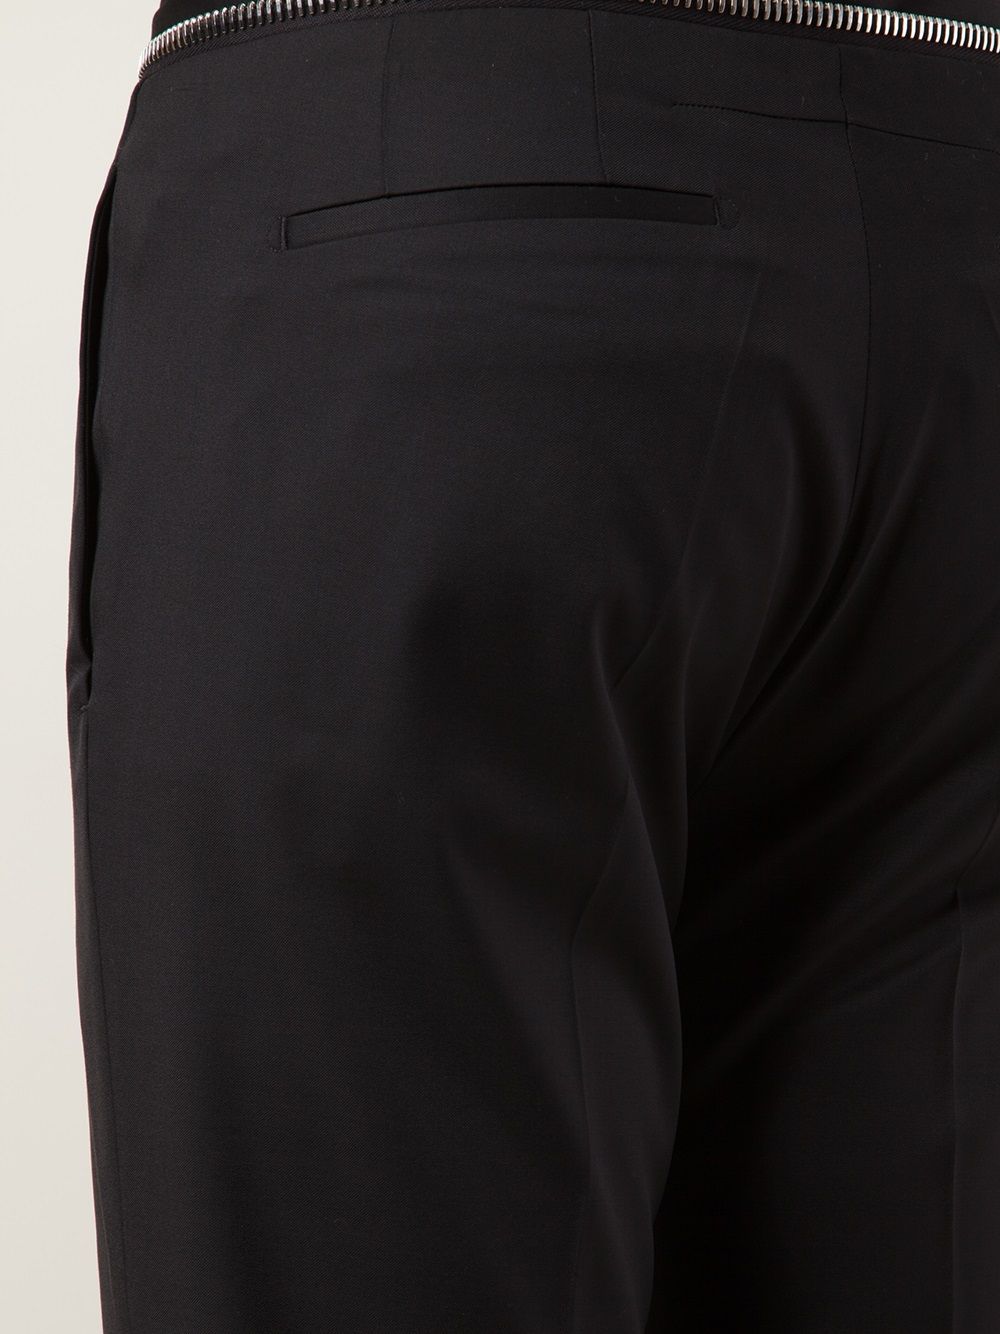 фото Givenchy брюки с манжетами на молнии